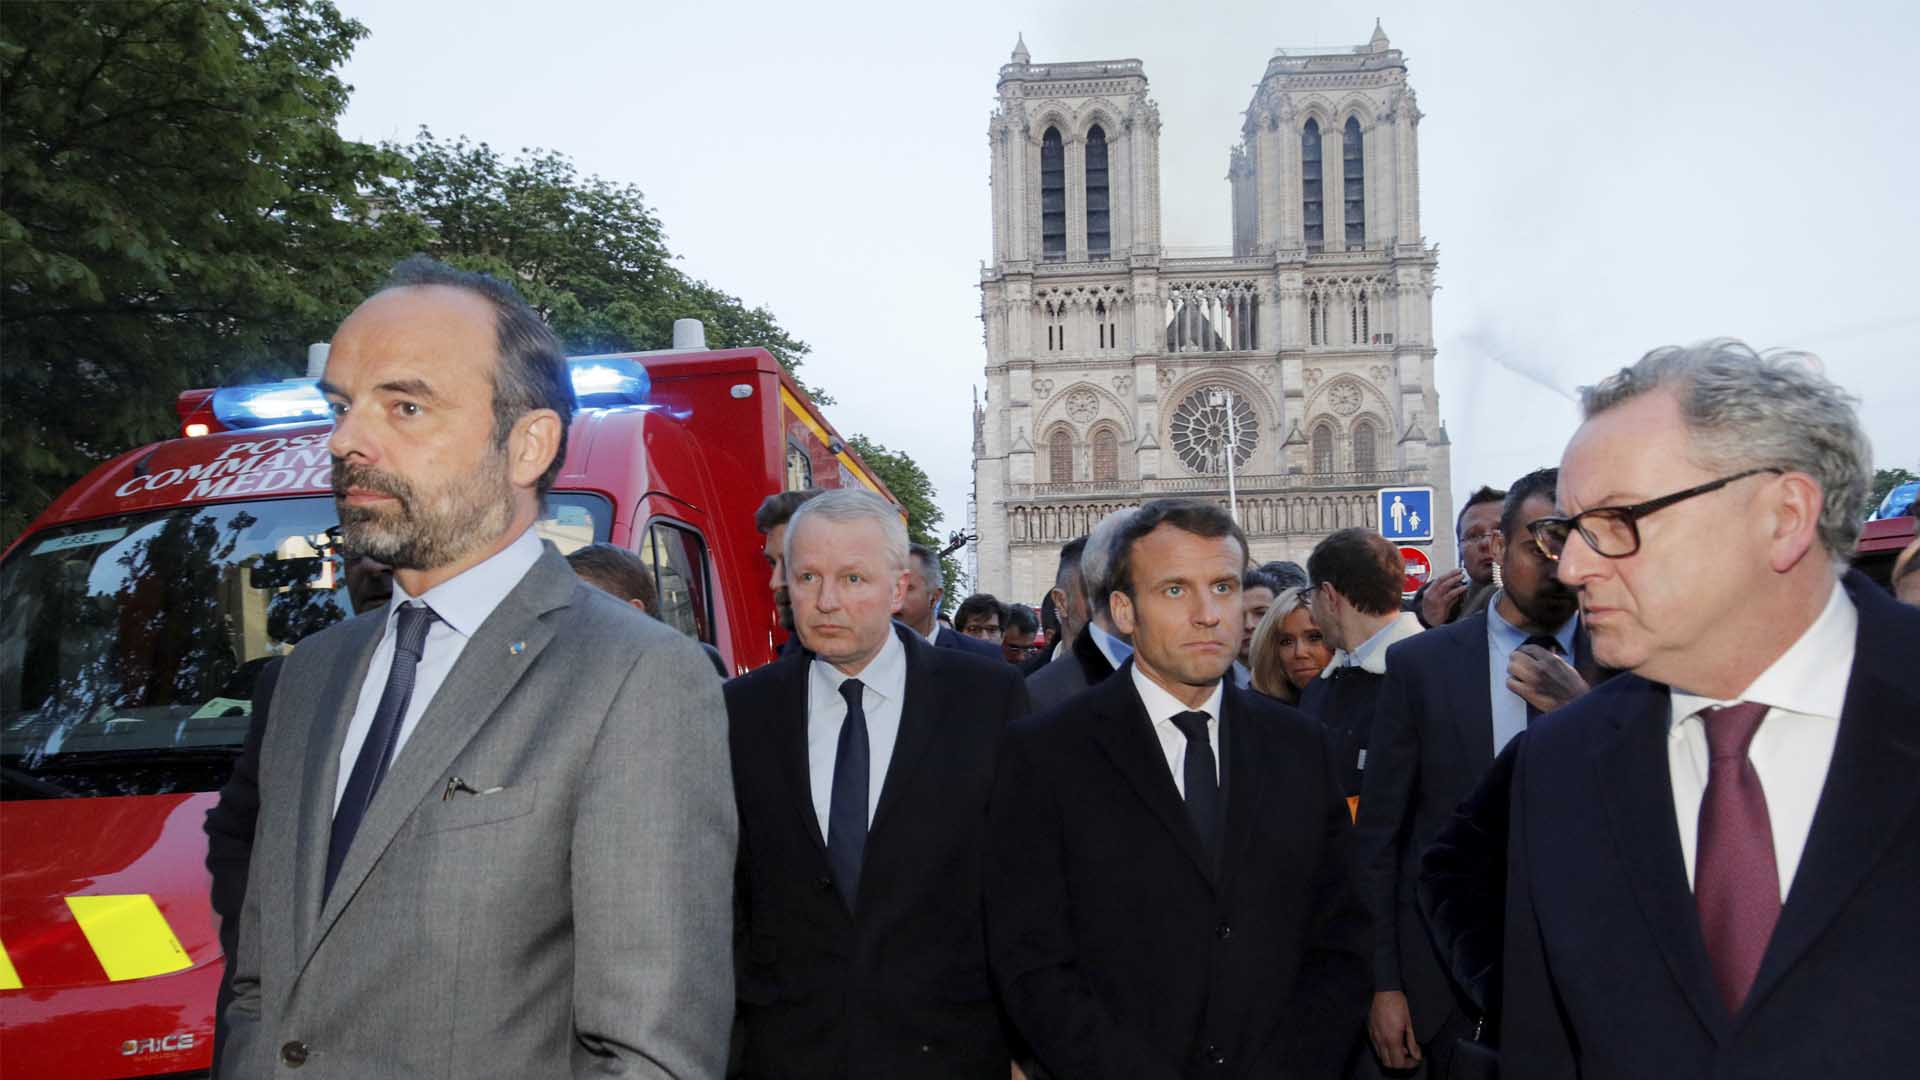 Macron quiere reconstruir en cinco años una Notre Dame «aún más bella»